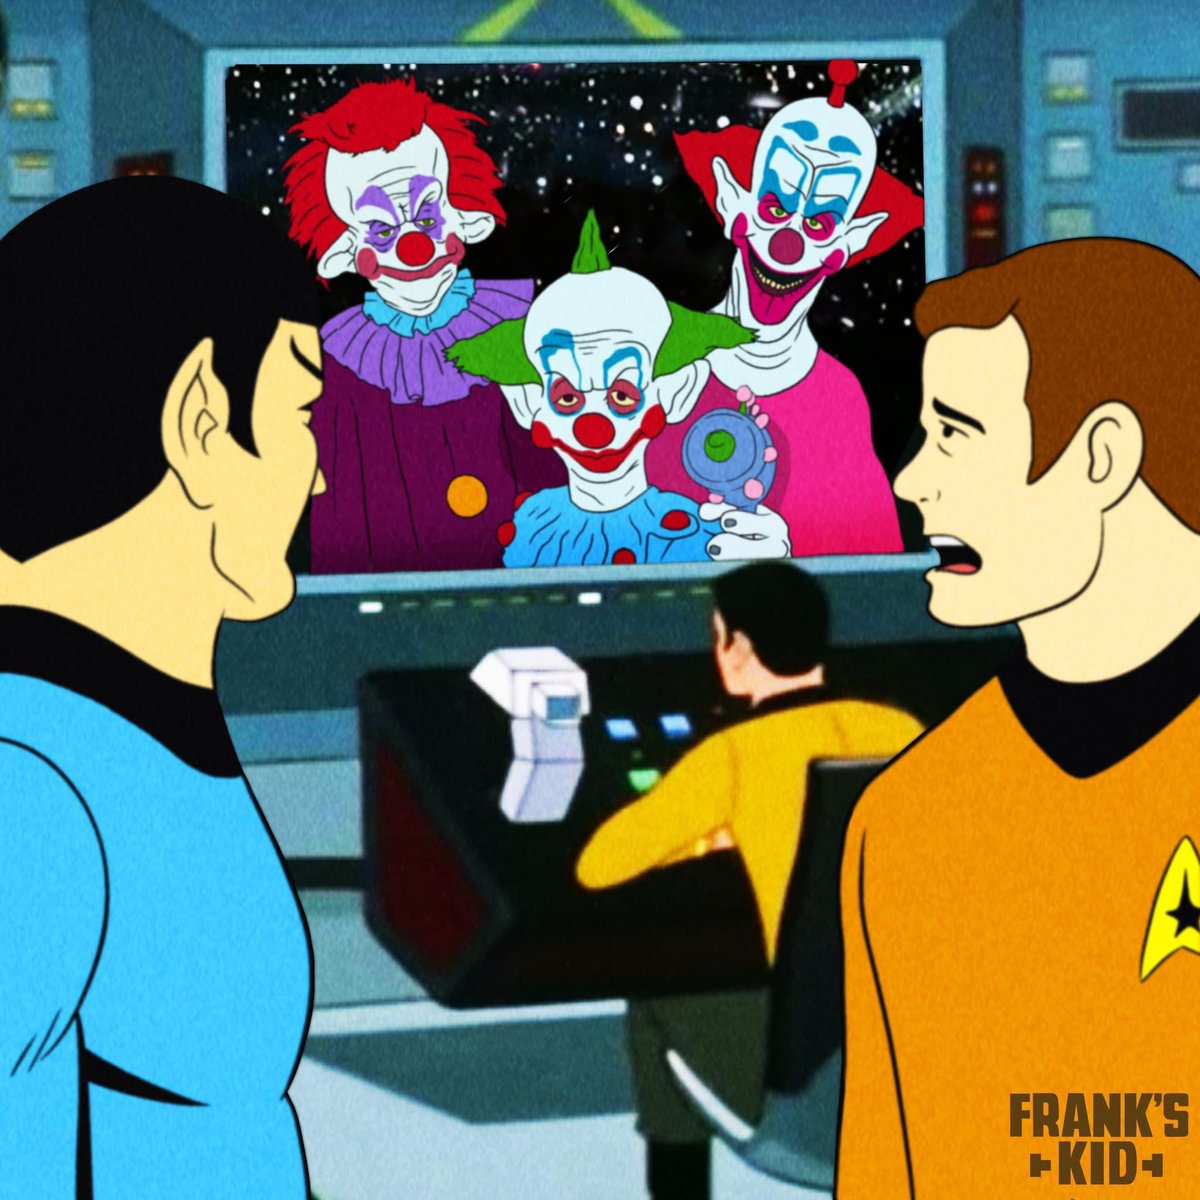 Killer Klowns Beaming Up
#killerklownsfromouterspace #clown #startrek #space #HorrorFam #horror #captainkirk #HorrorCommunity #funny